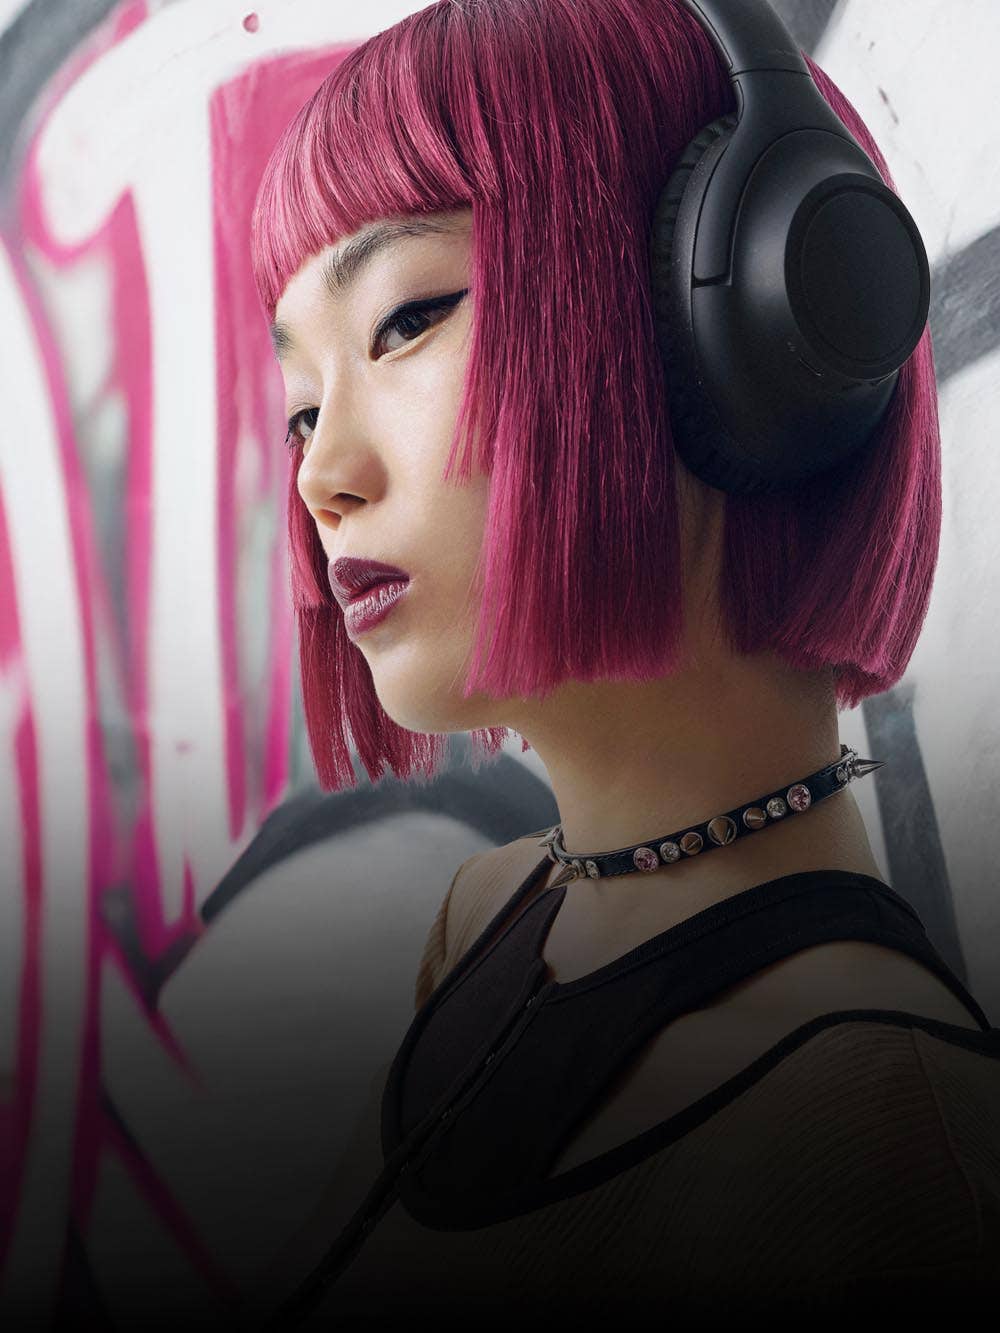 Audio-Technica präsentiert kabellosen Kopfhörer mit der bislang besten Akkulaufzeit – sensationelle 90 Stunden 